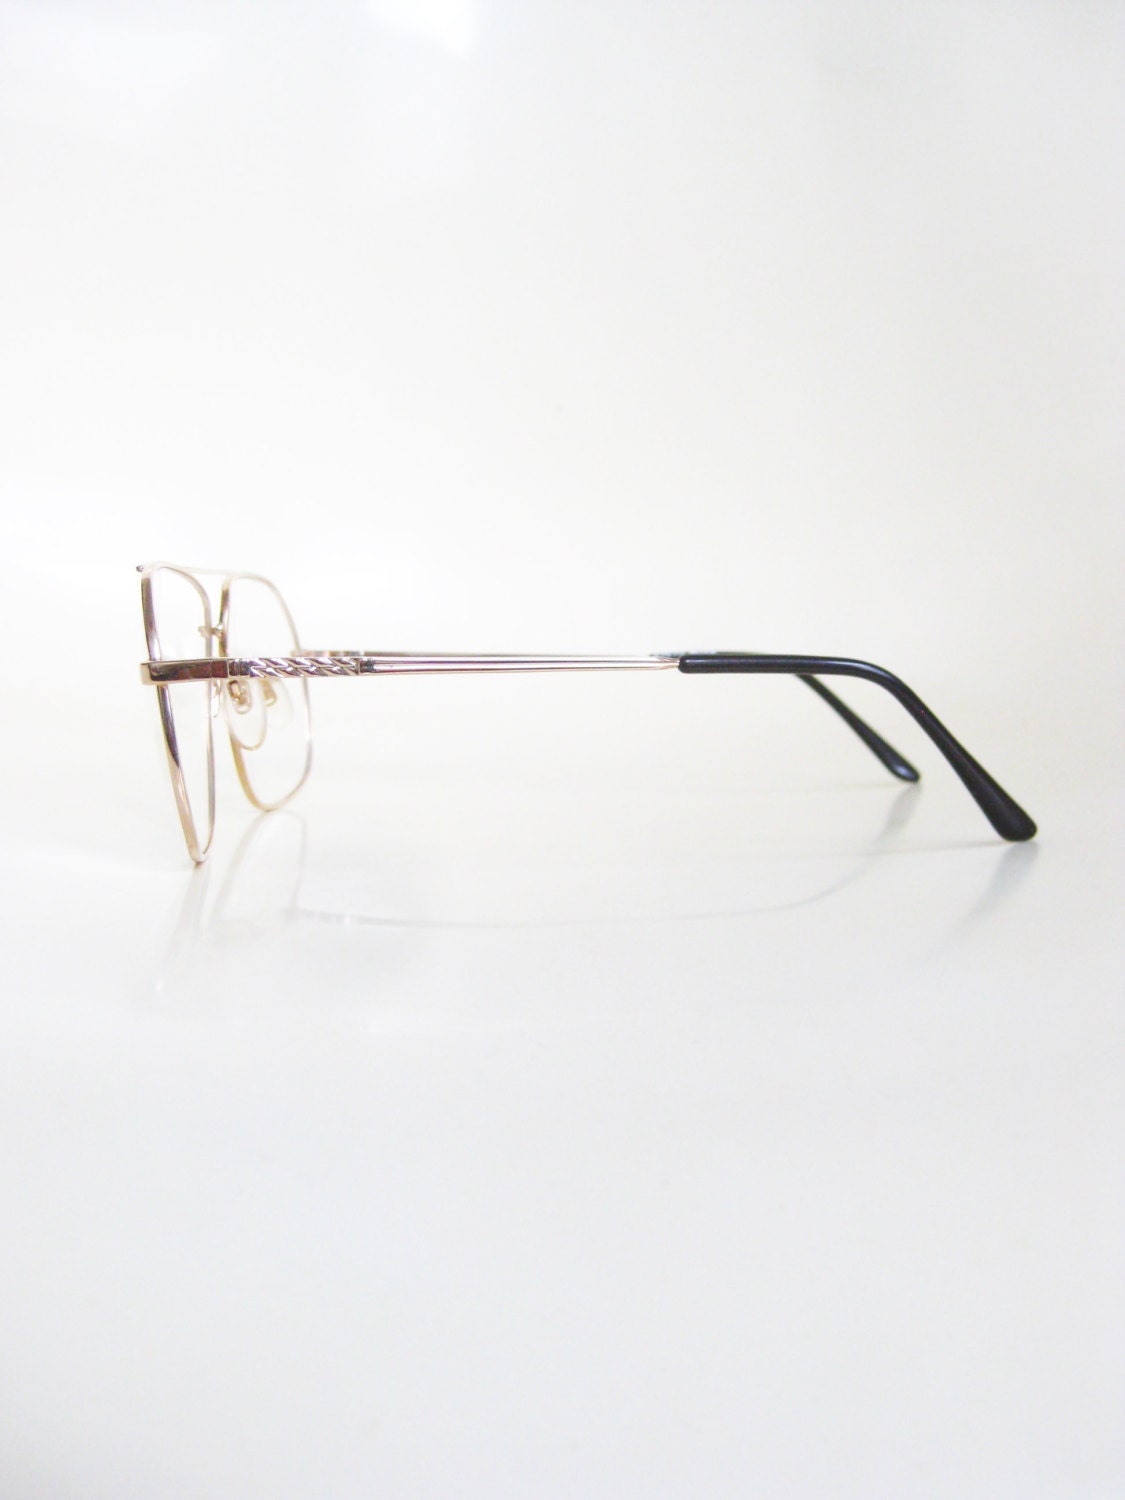 Vintage Gold Aviator Mens Eyeglasses Glasses by OliverandAlexa